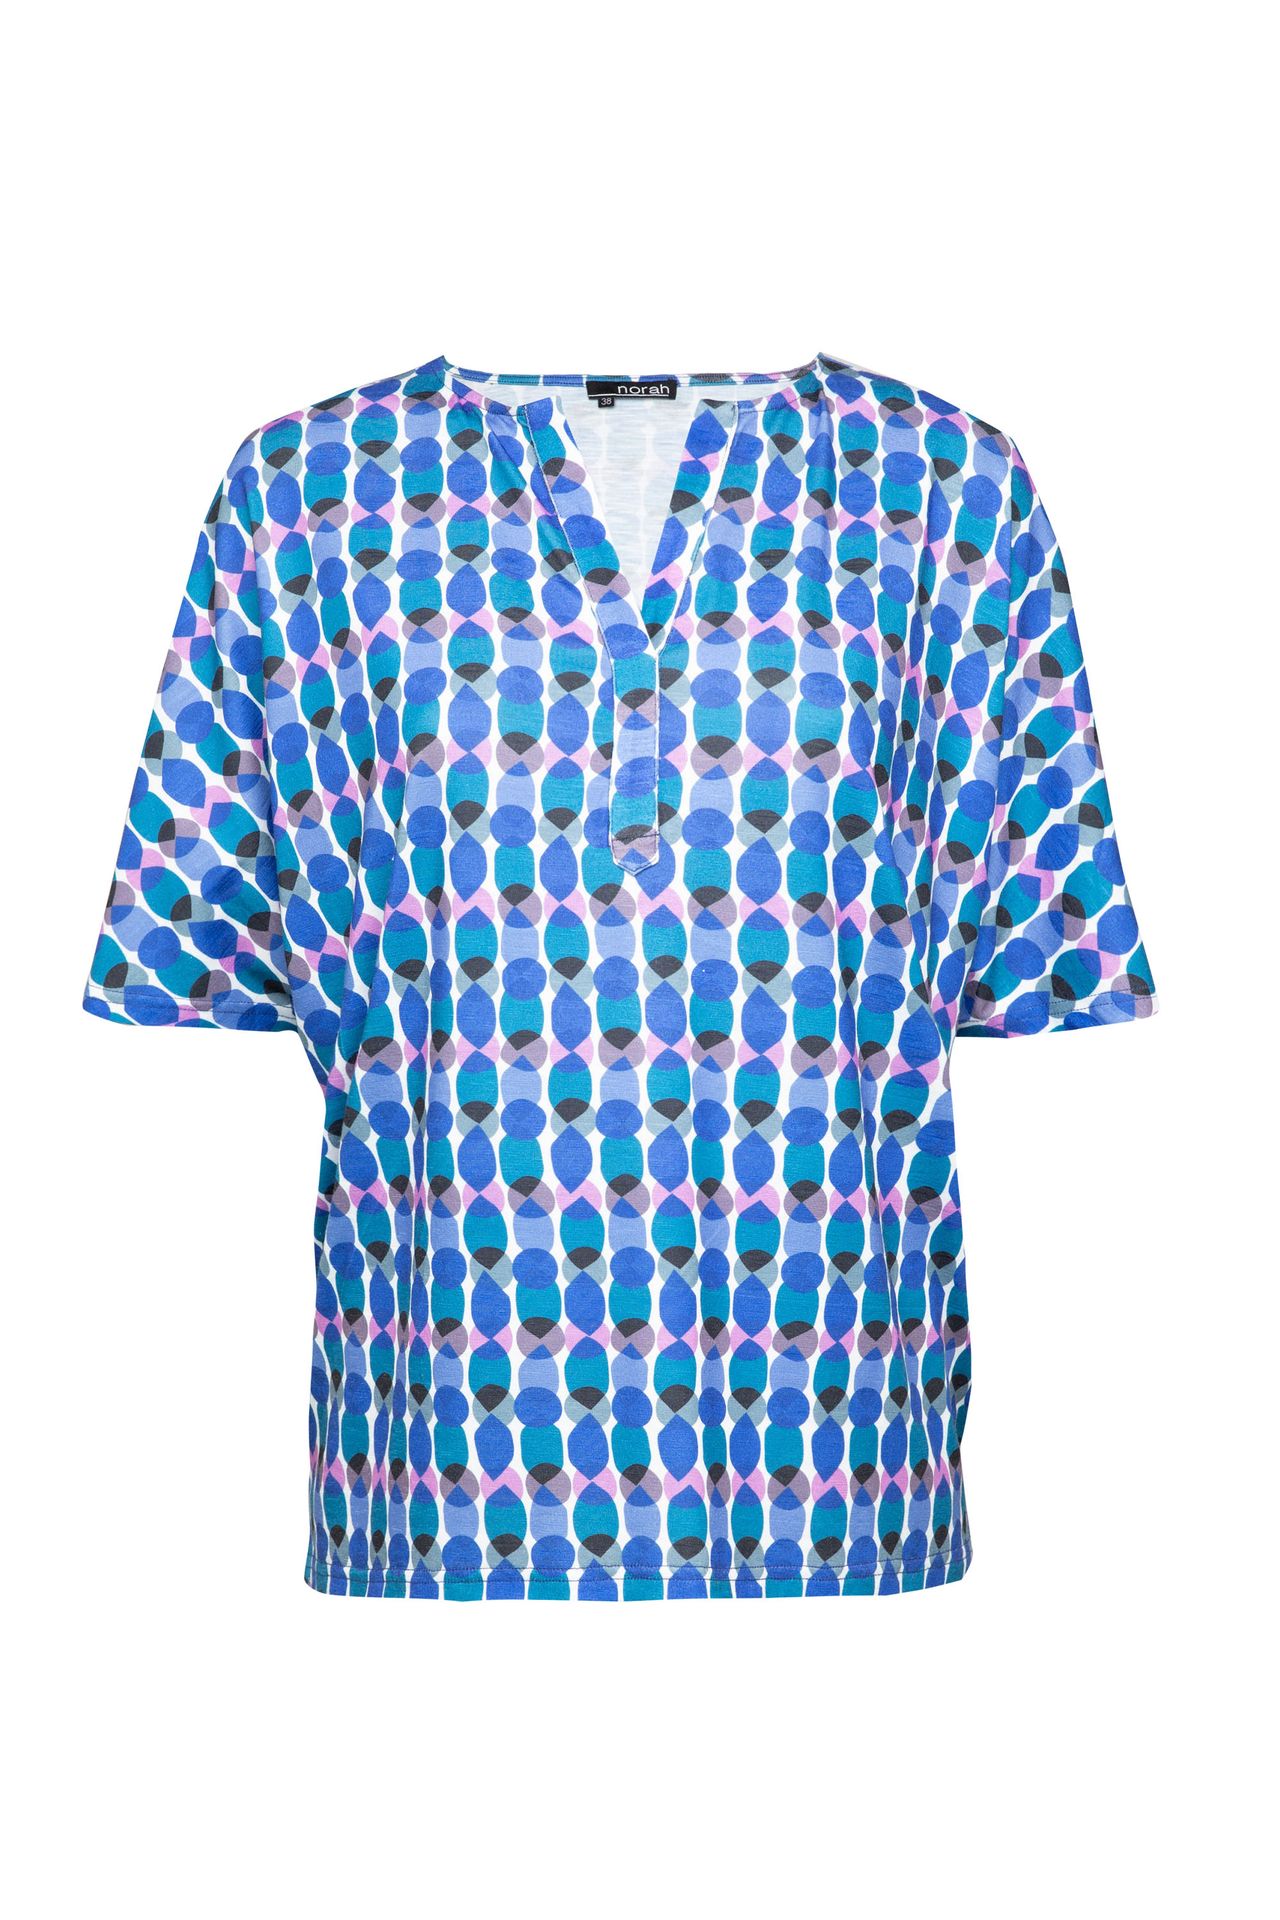  Shirt blauw multi cobalt multicolor 212756-469